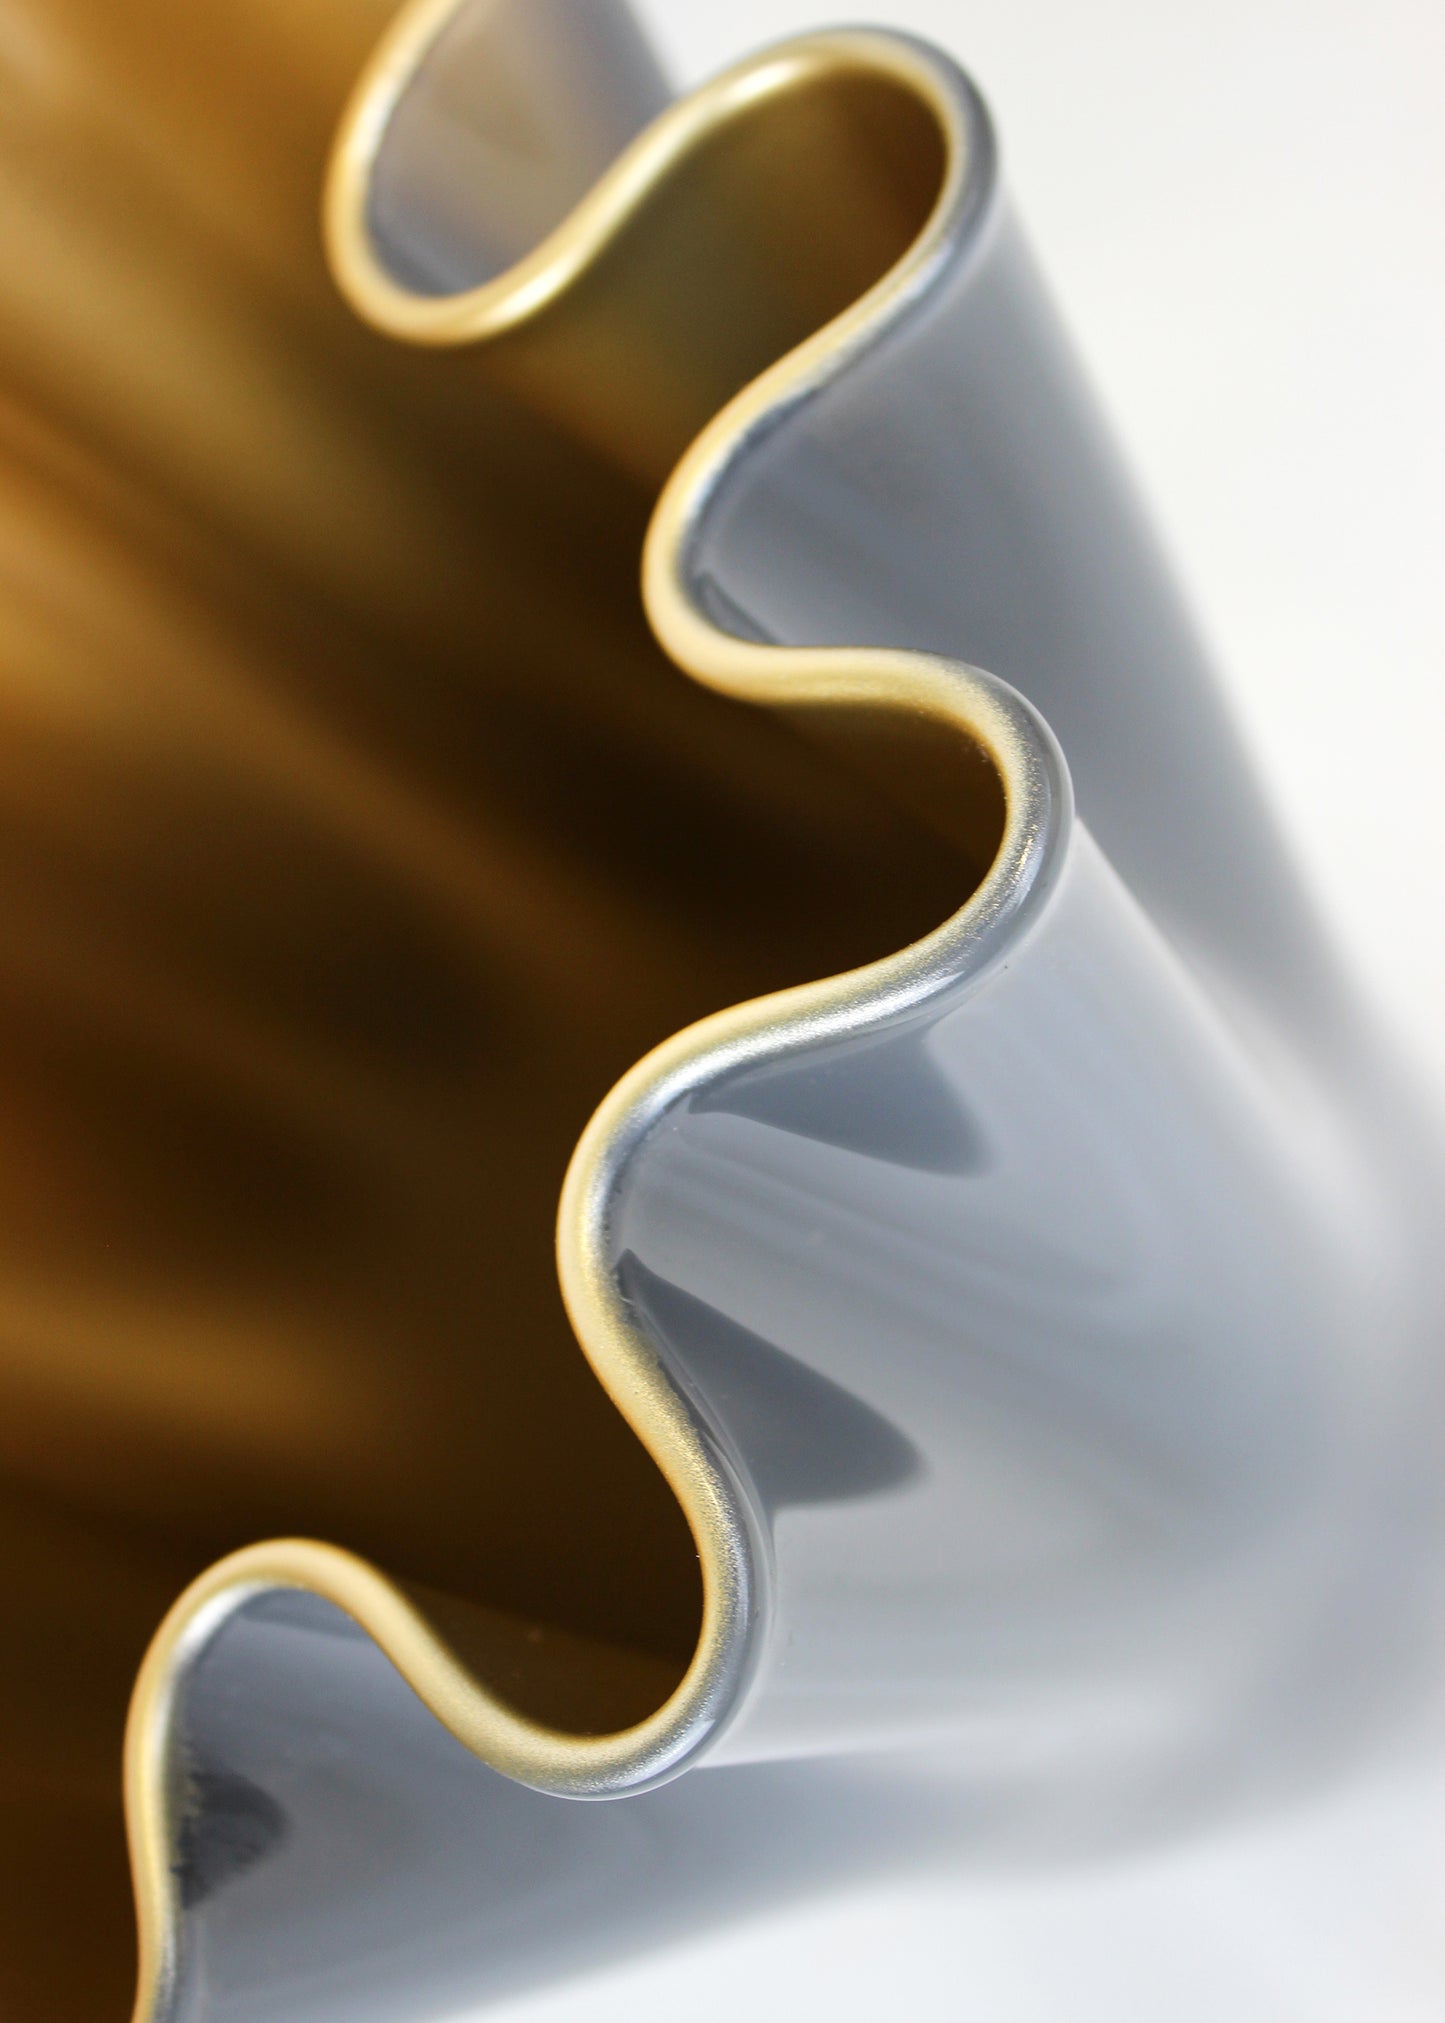 Glasvase in 2 Farben - gold und grau mit gewelltem Rand